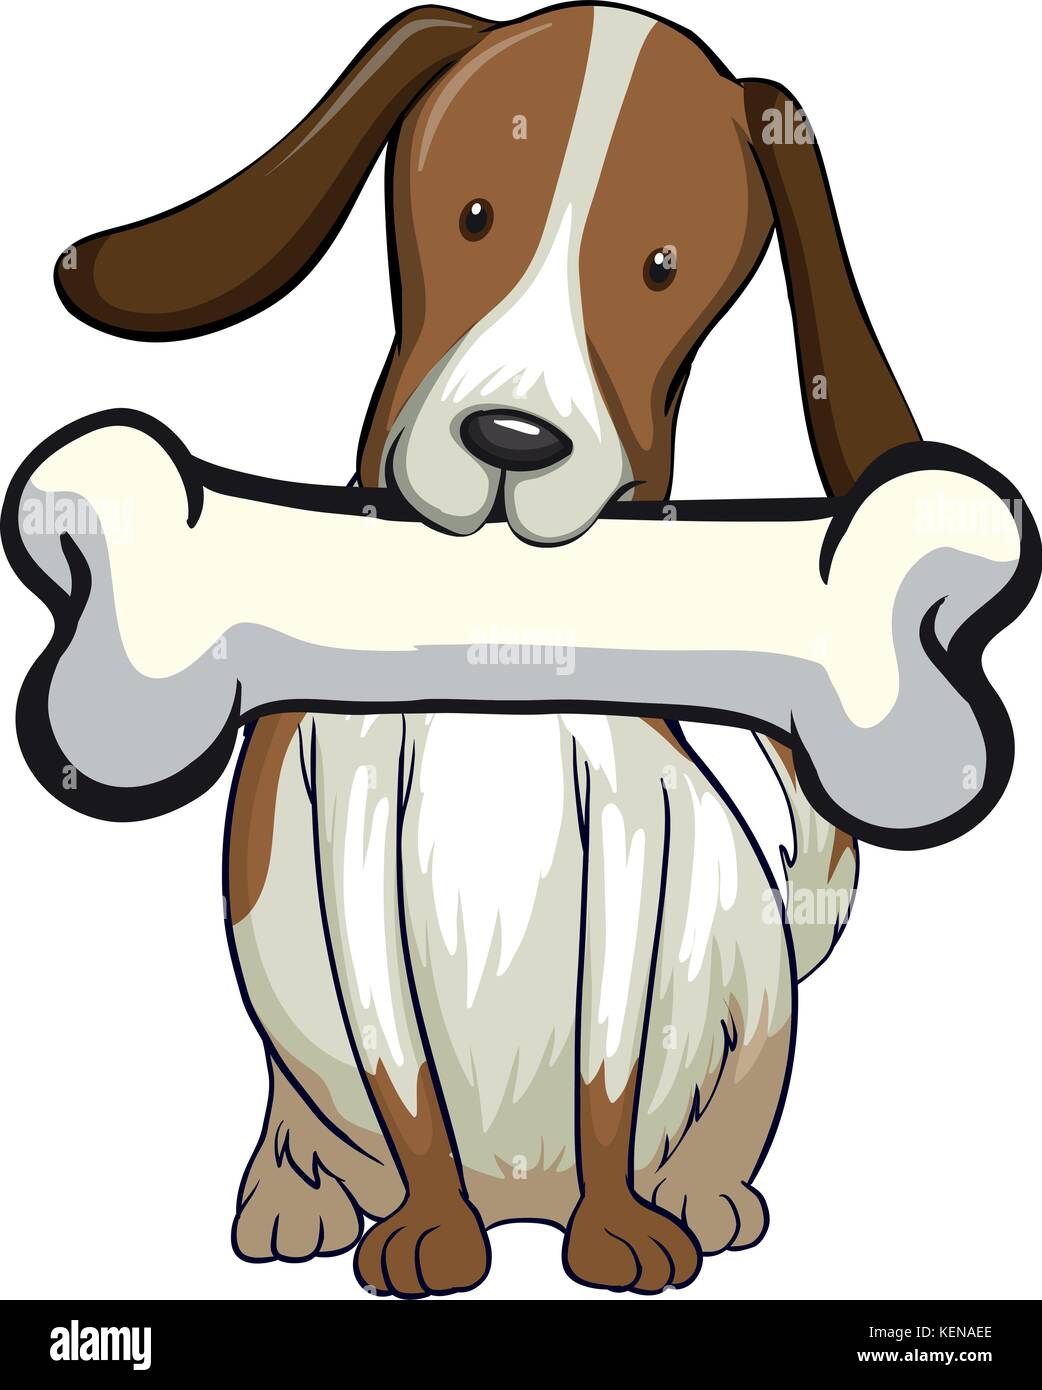 Hund mit Knochen in einem einfachen Stil Stock Vektor